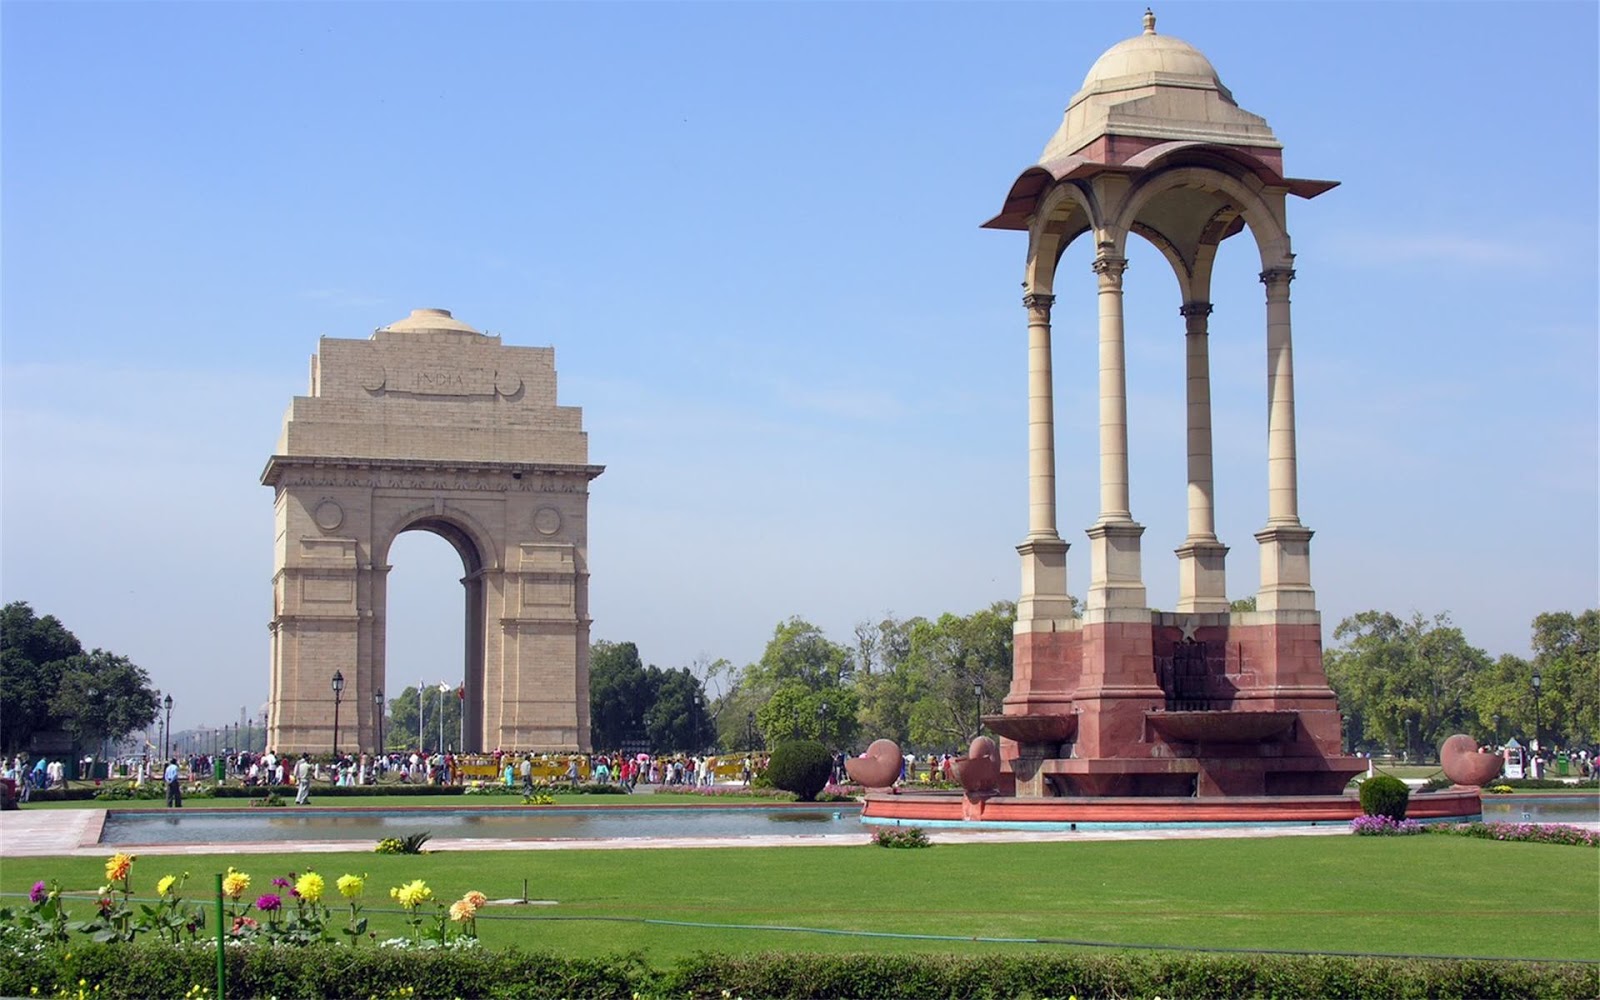 delhi tapete,bogen,die architektur,monument,triumphbogen,klassische architektur